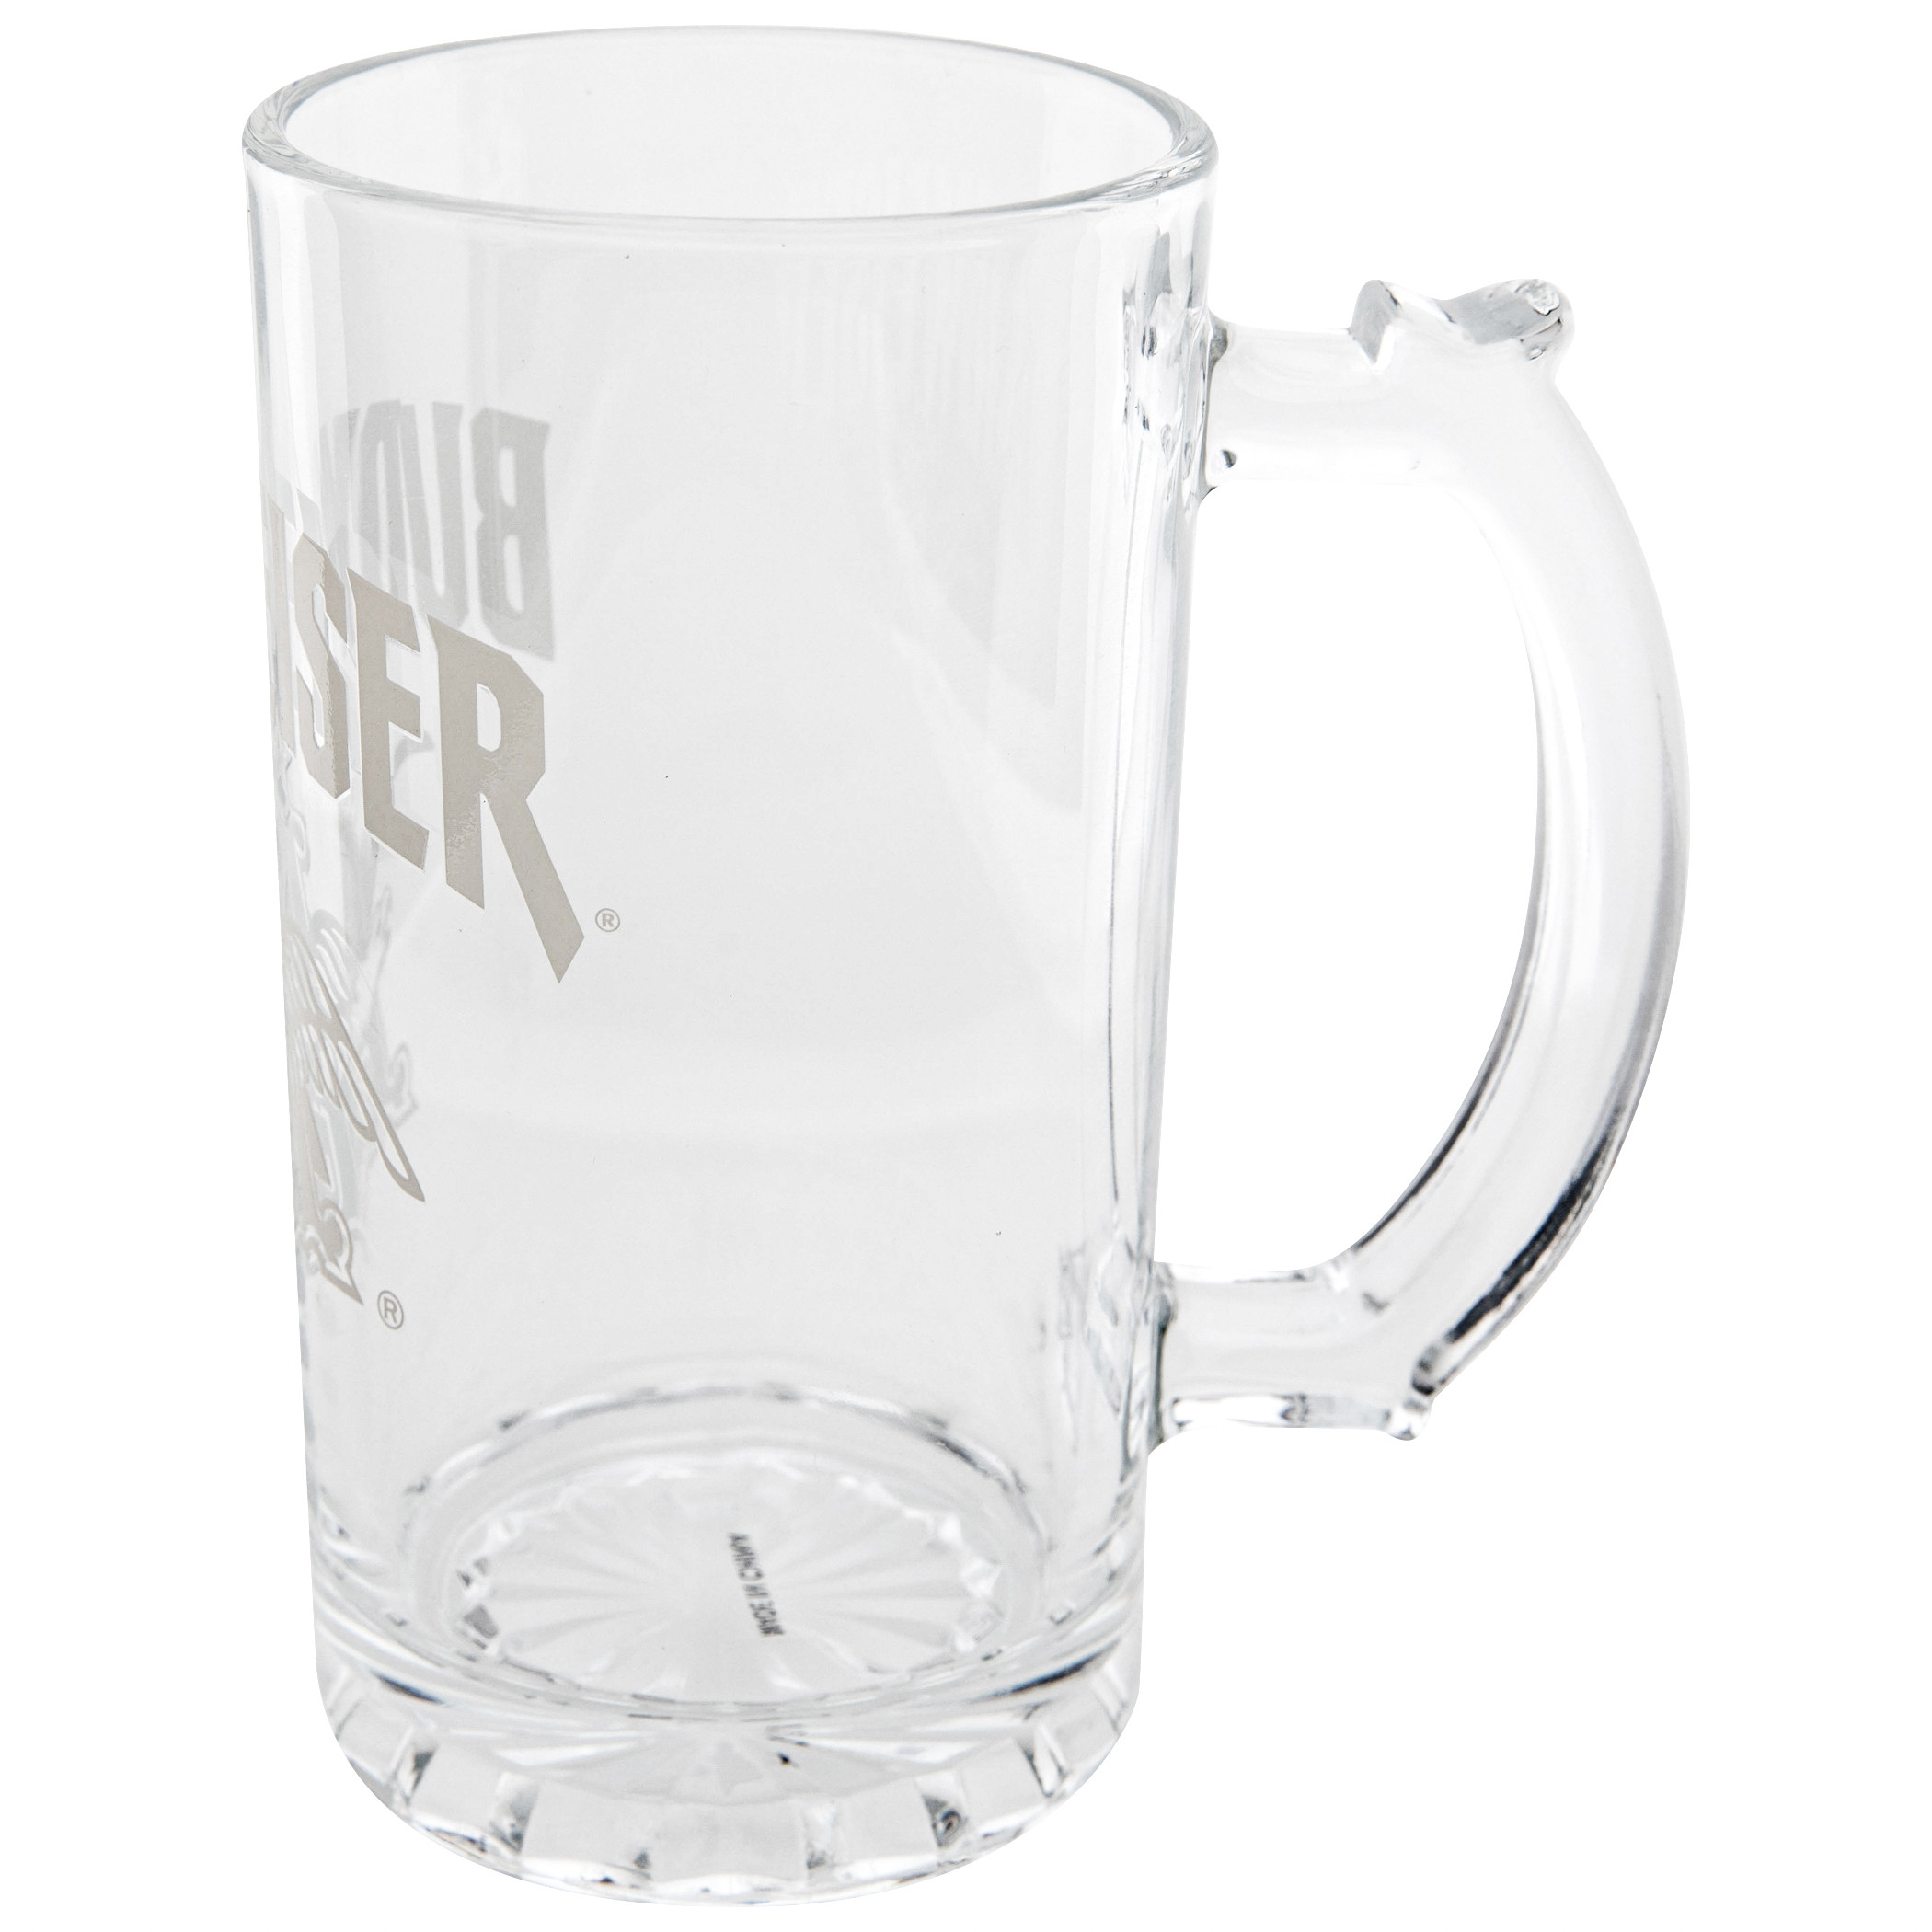 Budweiser Limited-Edition Vintage Glass Stein